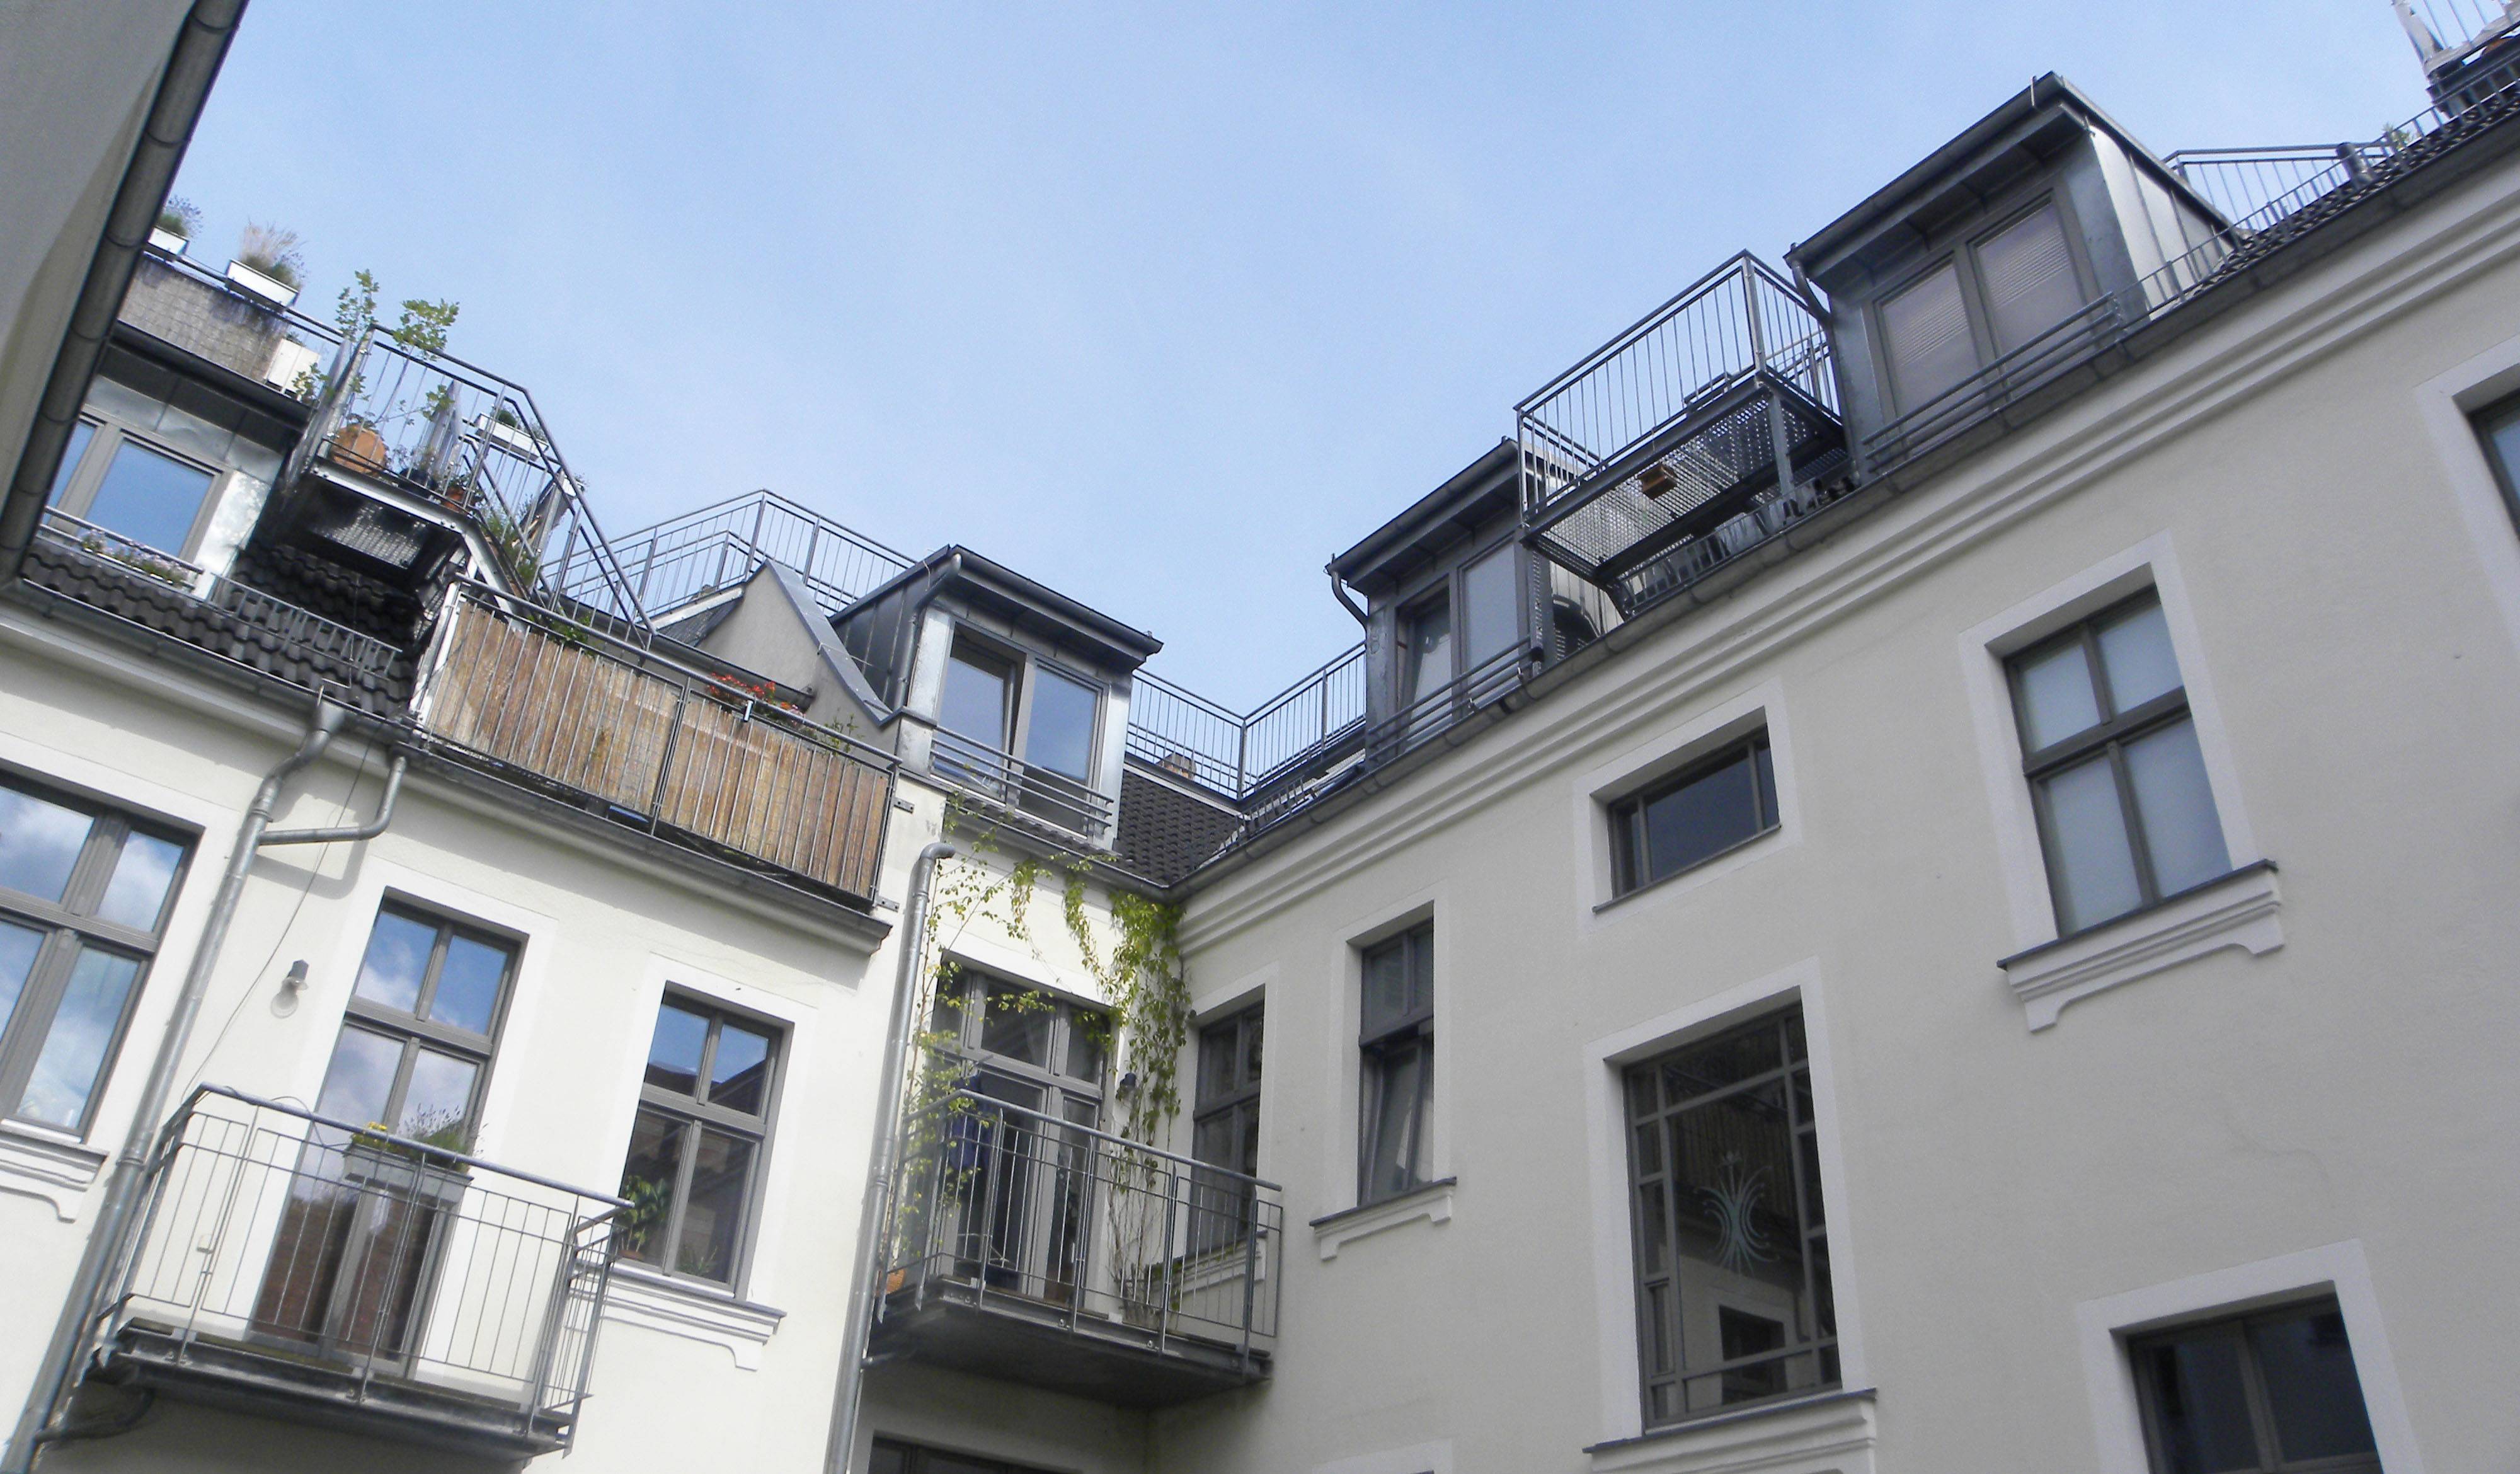 Berlin (Allemagne), le 19 juin. Vue sur les terrasses aménagées sur le toit.